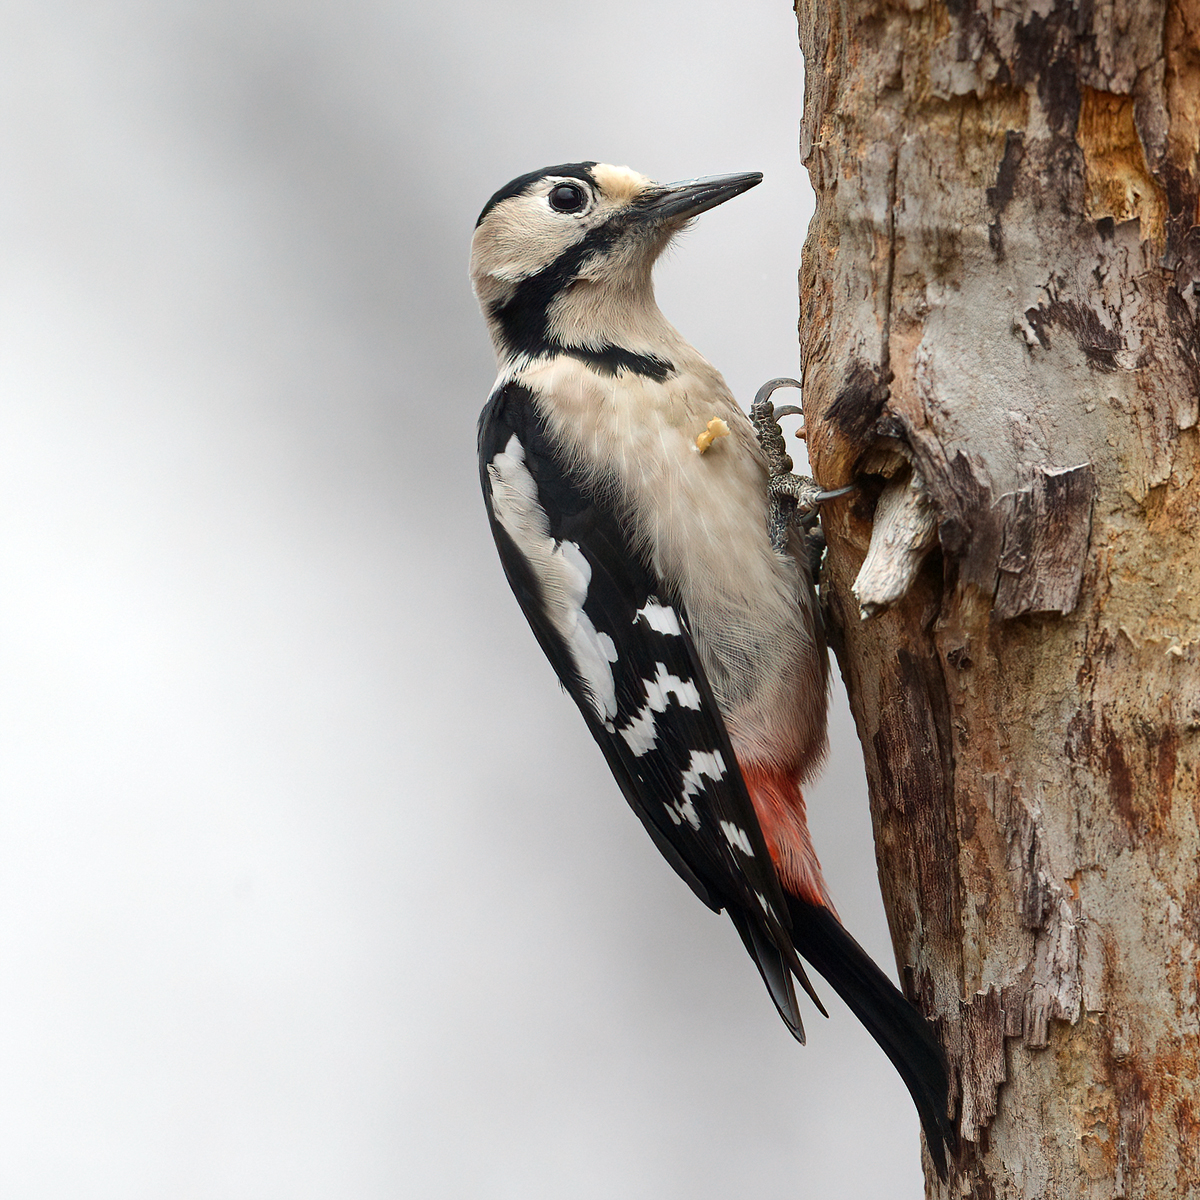 Syrian Woodpecker (Syrische Bonte Specht)